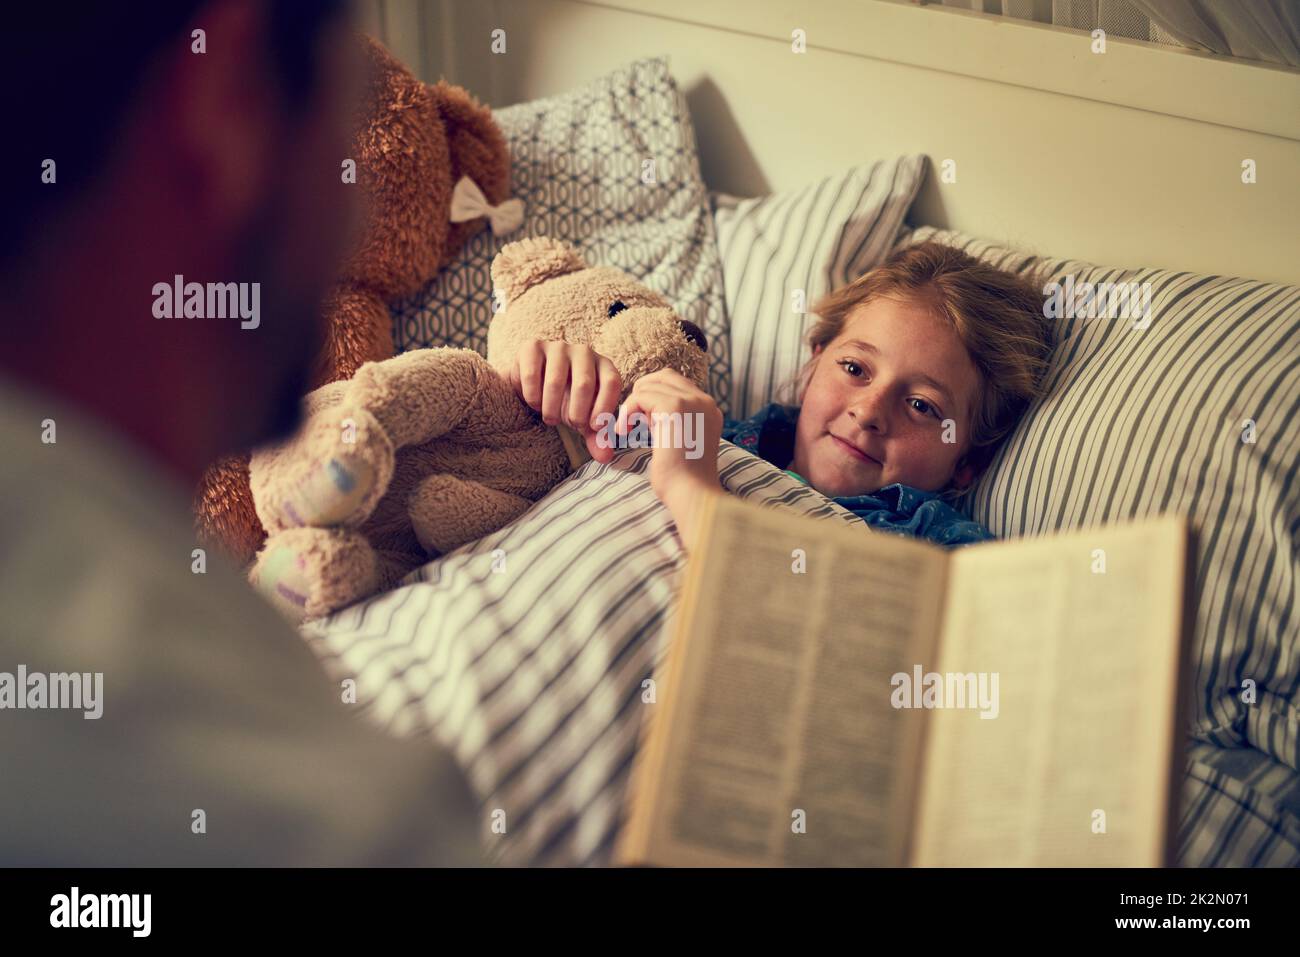 Des histoires magiques pour créer des rêves de sweetdreams. Photo rognée d'un père lisant une histoire de coucher à sa petite fille à la maison. Banque D'Images